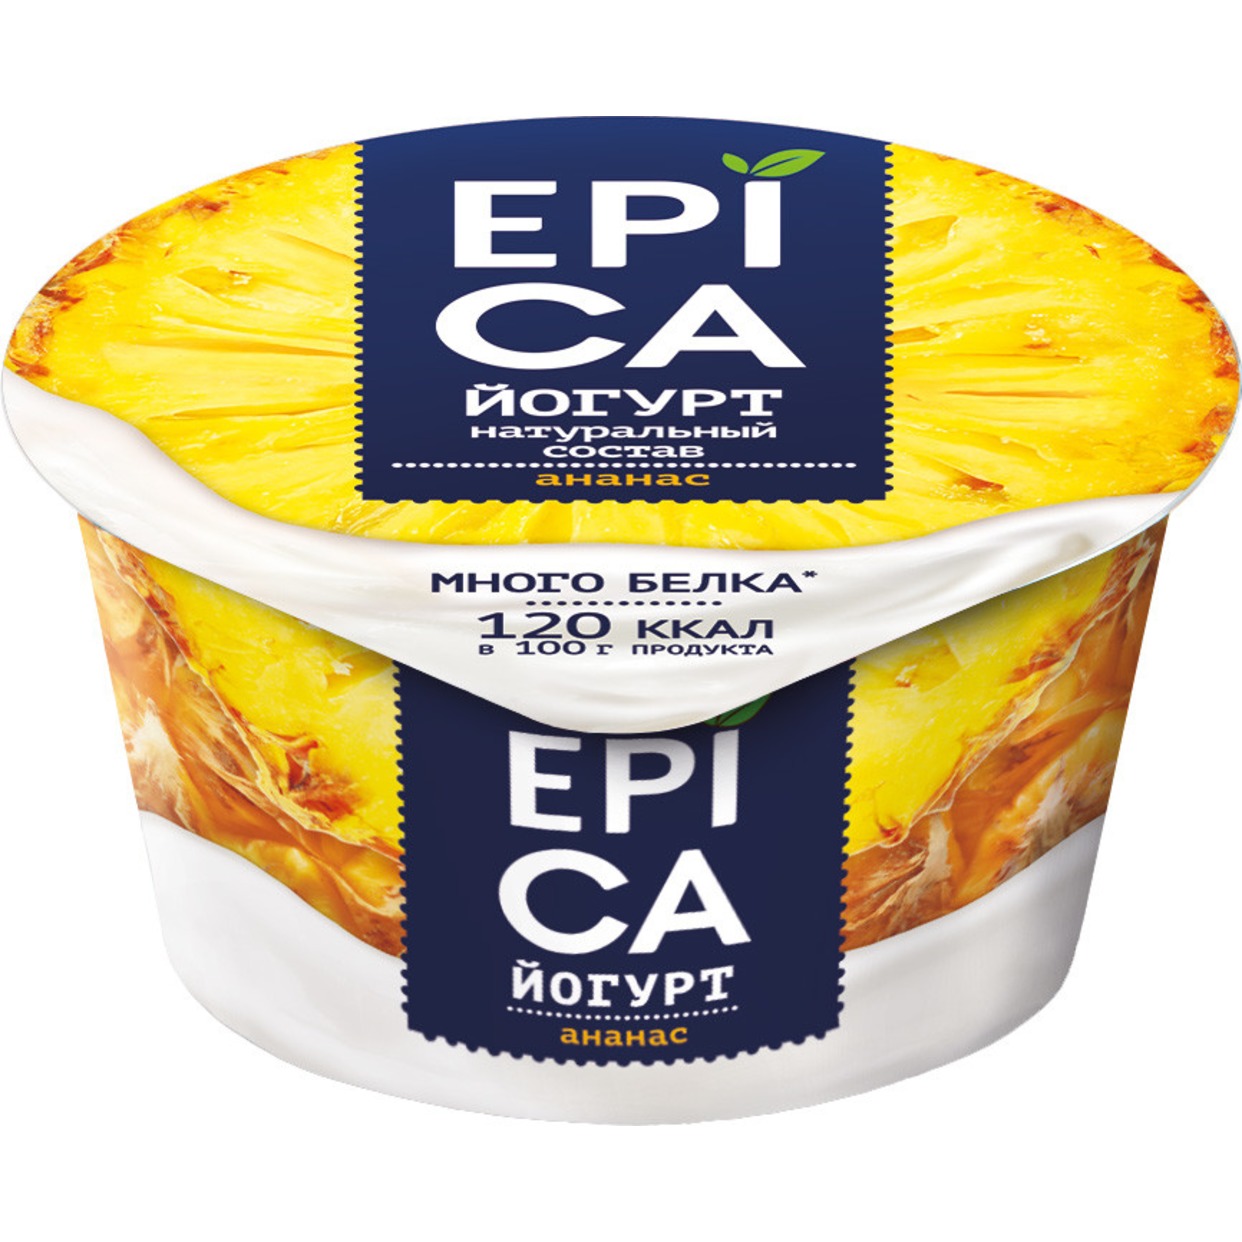 EPICA Йогурт с ананасом 4,8% 130г по акции в Пятерочке